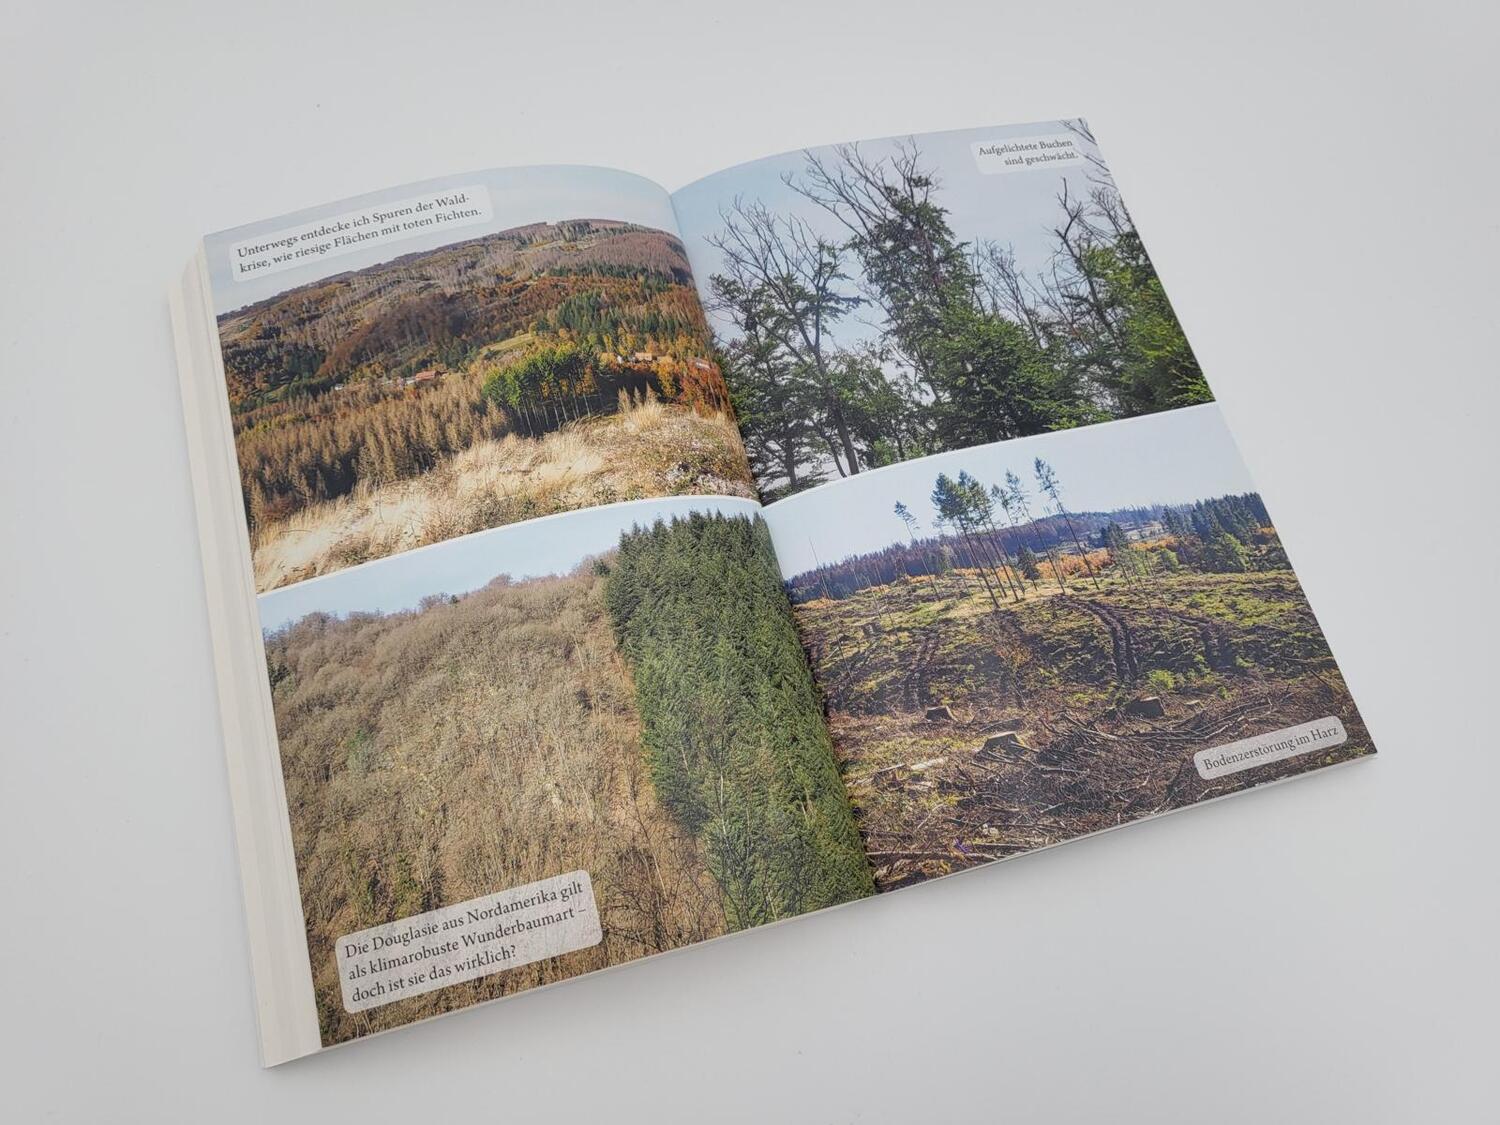 Bild: 9783890295664 | Der Waldwanderer | Gerald Klamer | Taschenbuch | 271 S. | Deutsch